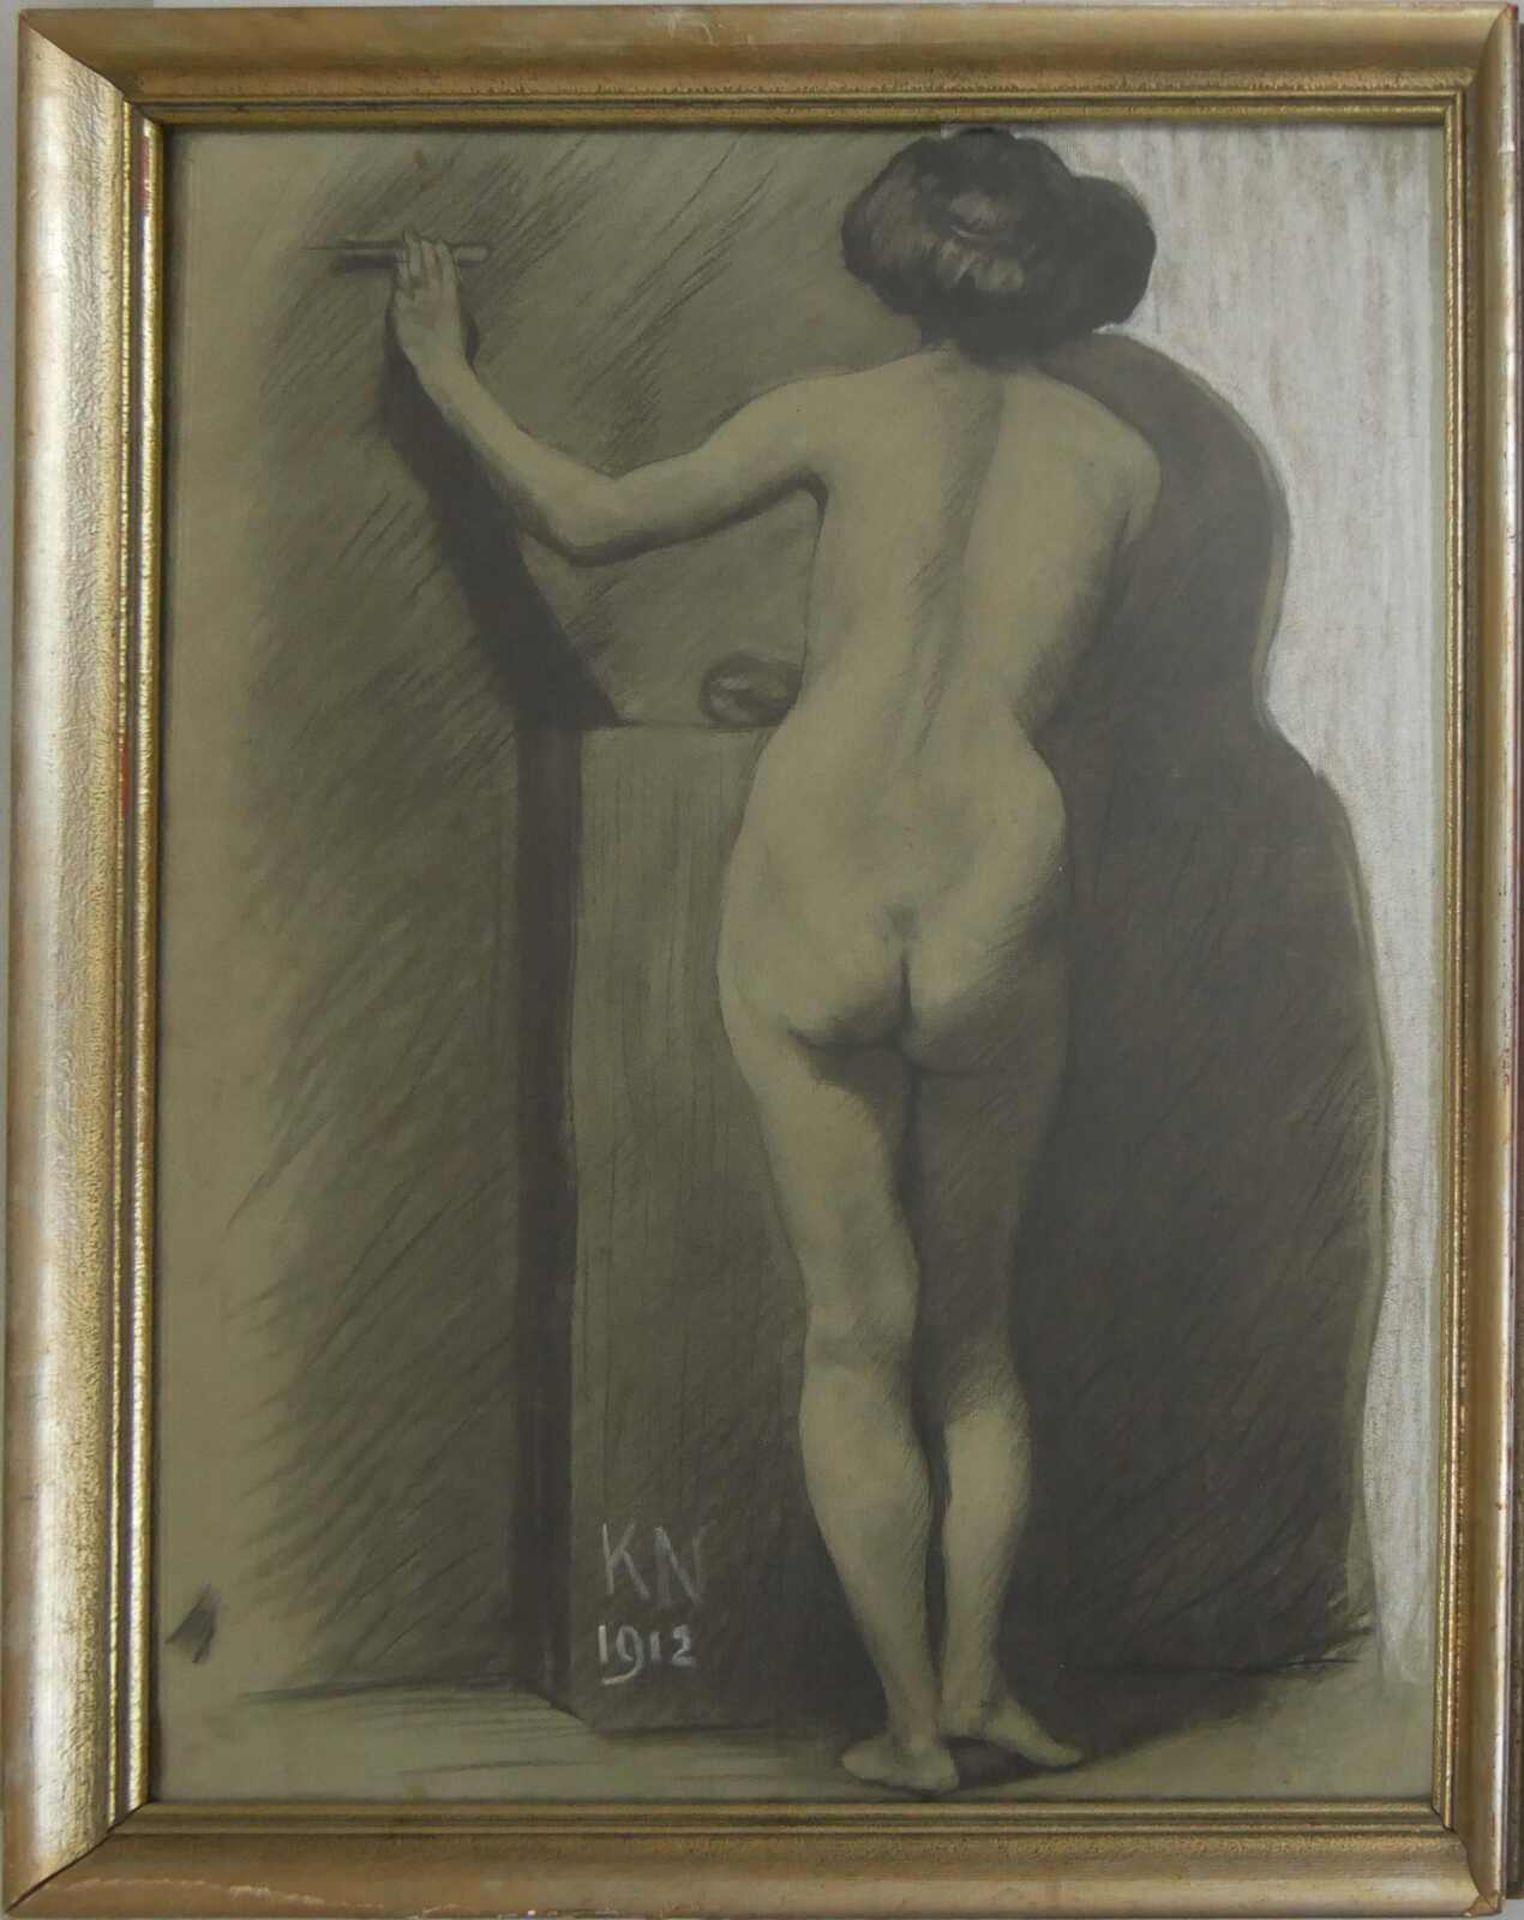 Bleistift / Kohlezeichnung, KN 1912 "rückenansicht Frau", hinter Glas gerahmt. Gesamtmaße: Höhe